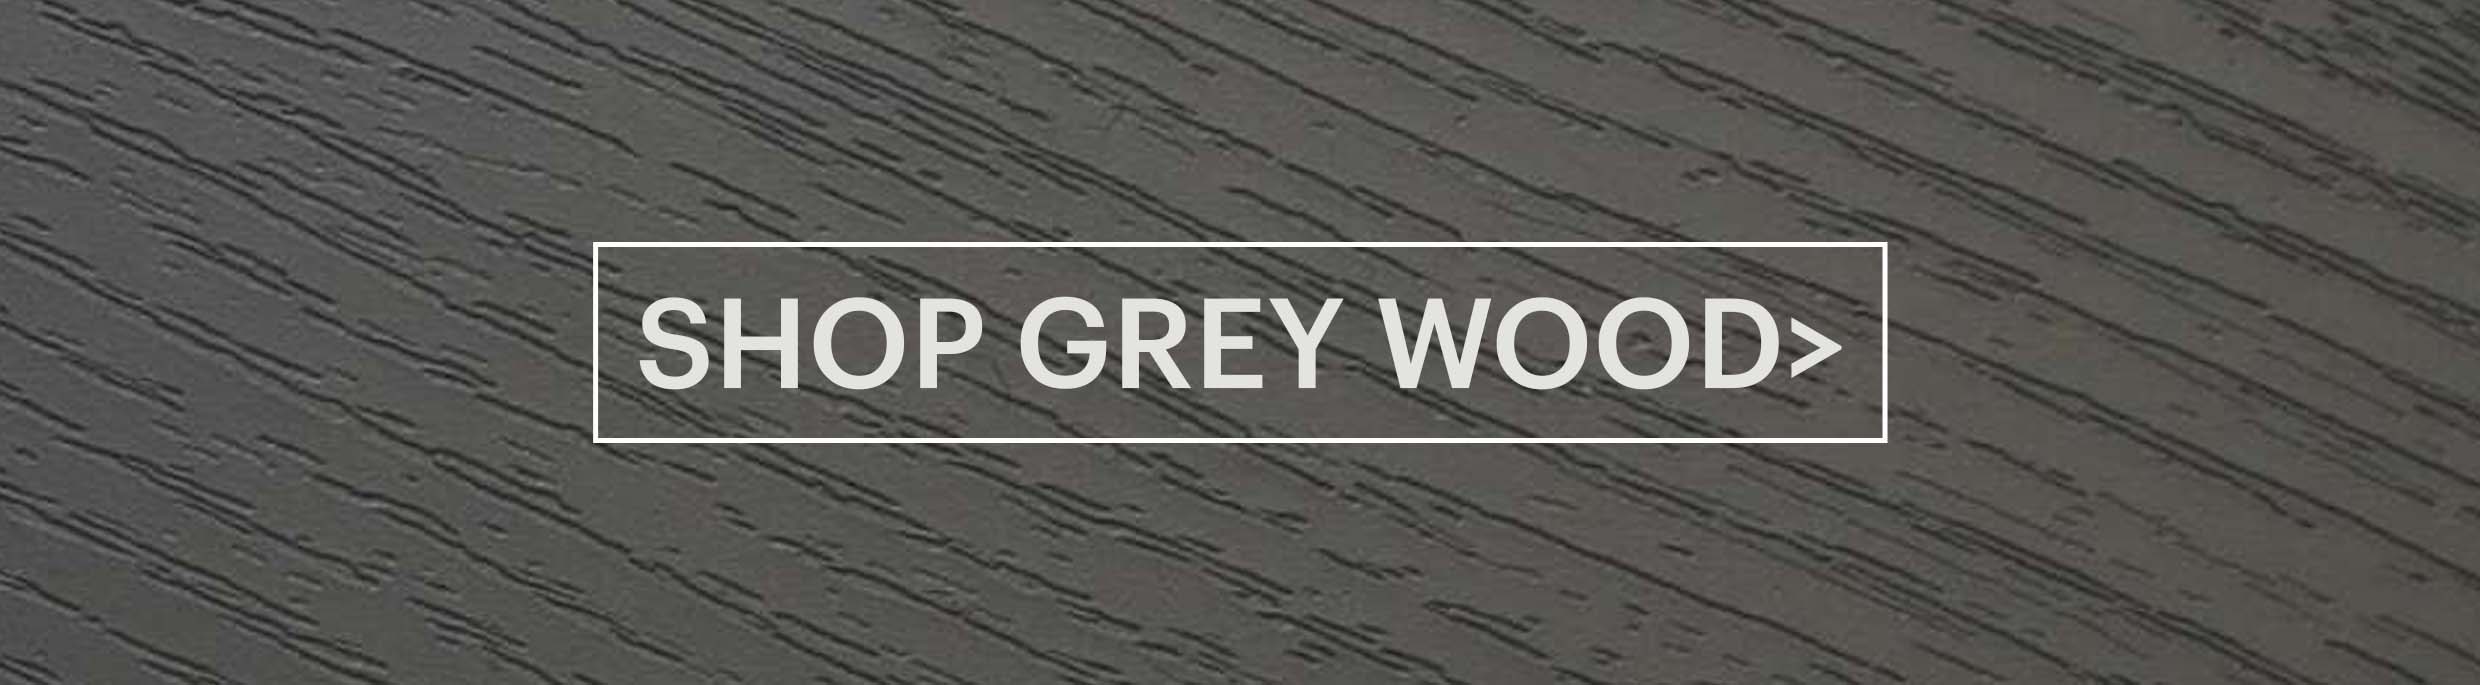 shop-grey-wood.jpg